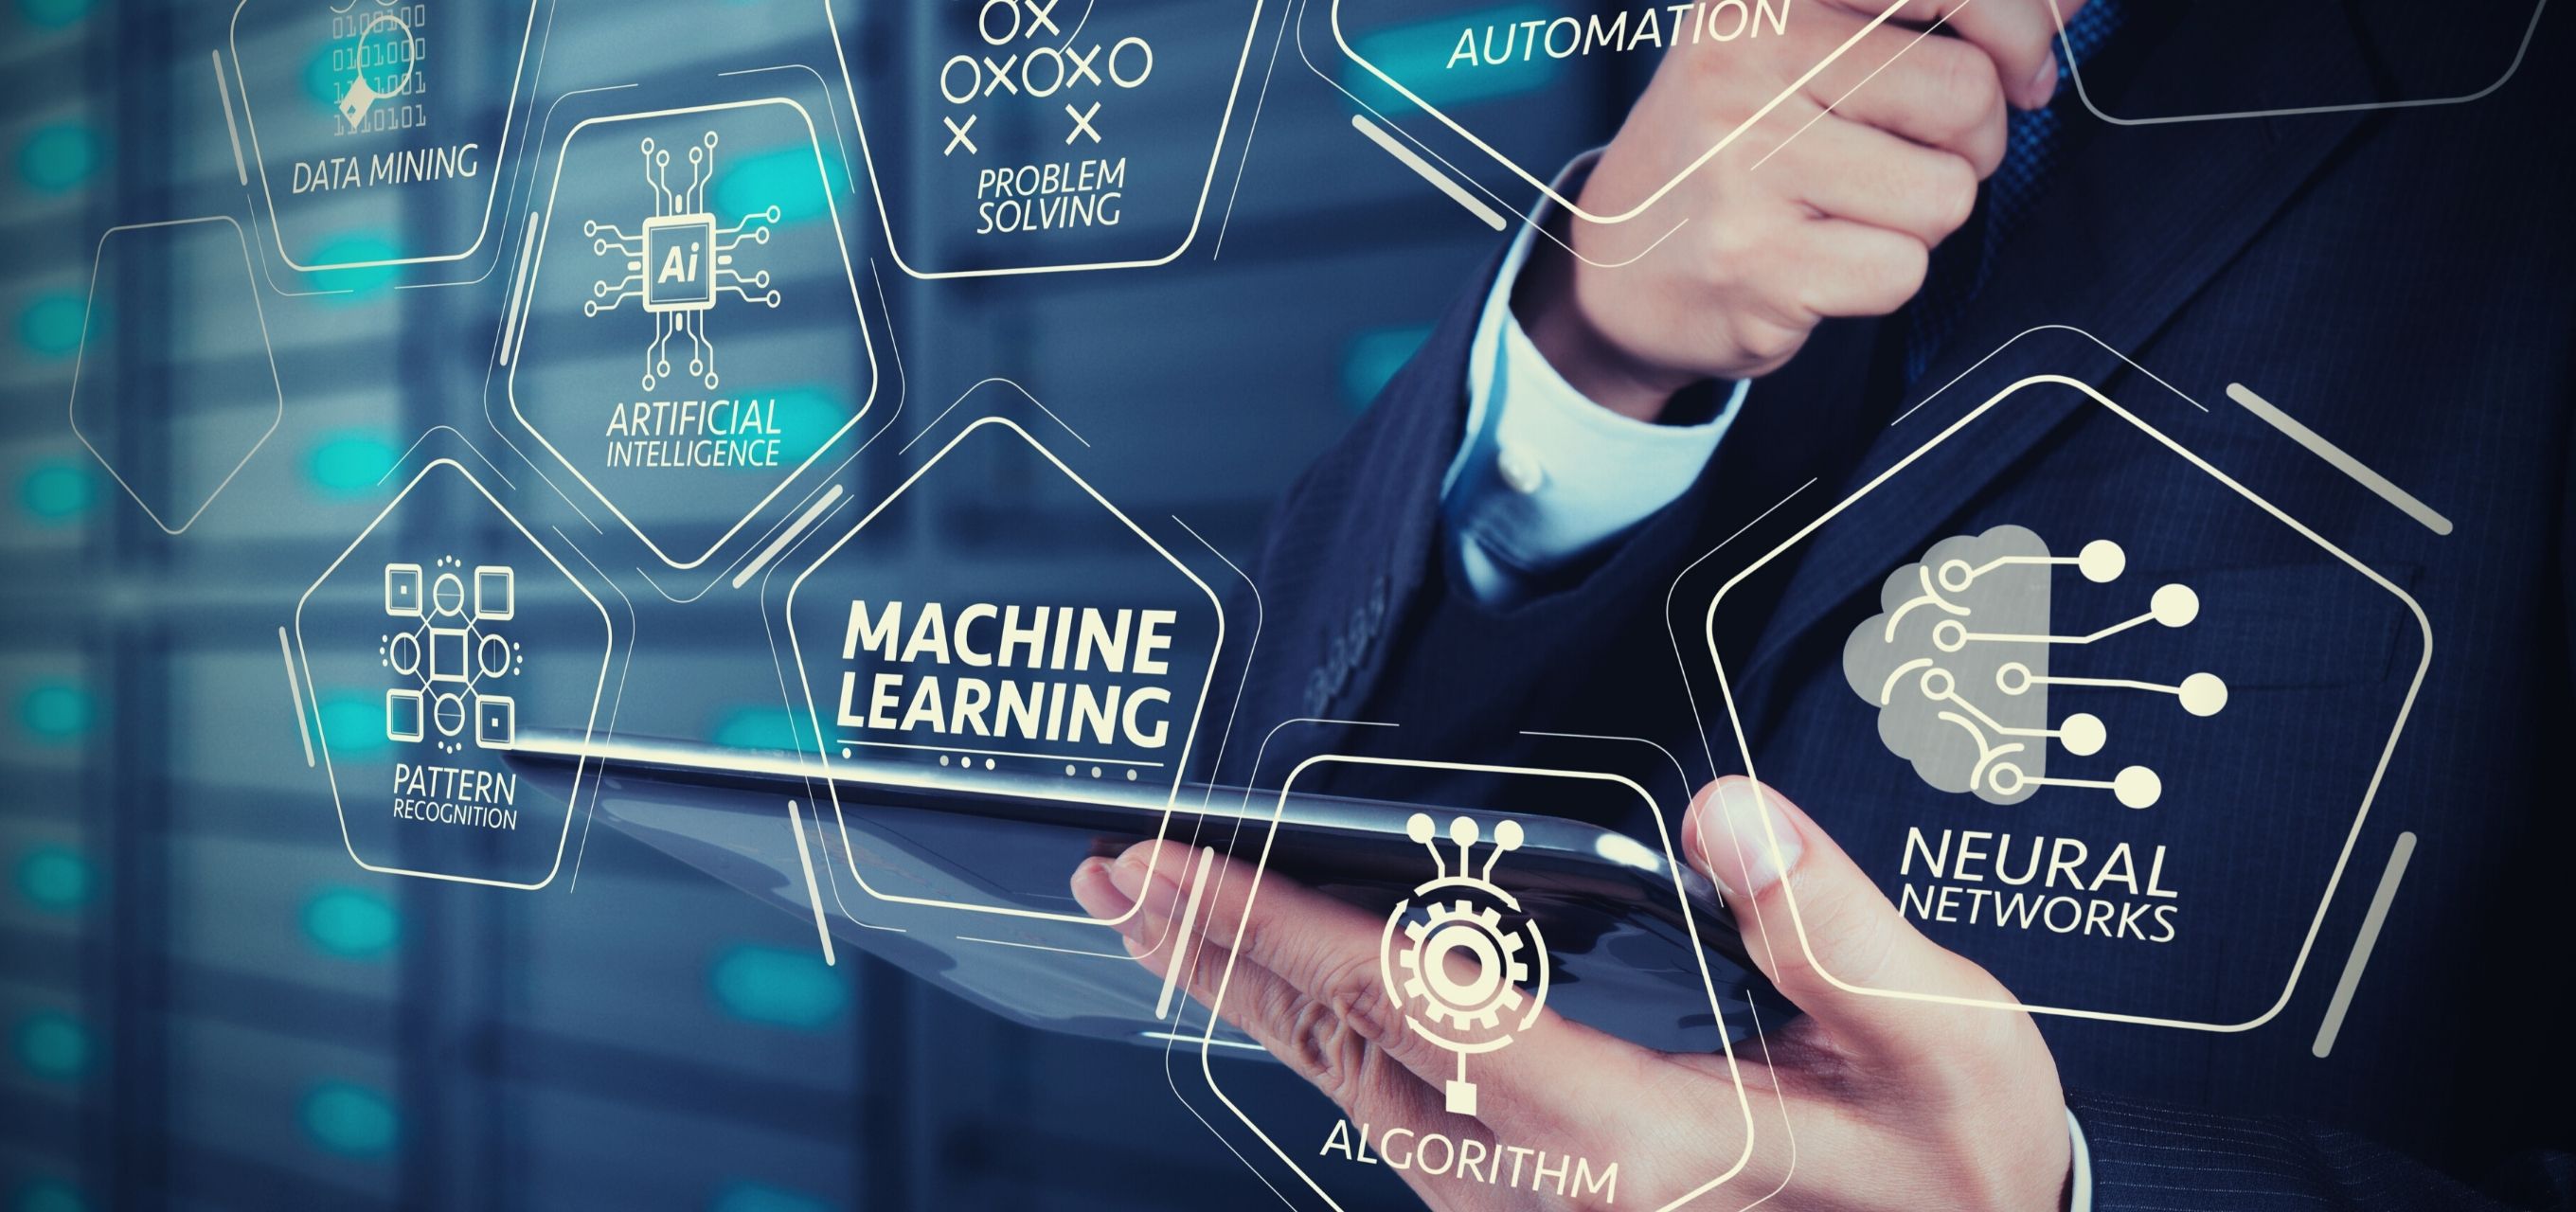 Обучение машинному коду. Машинное обучение и большие данные. Информационные технологии. Автоматизация искусственный интеллект. Технологии машинного обучения.